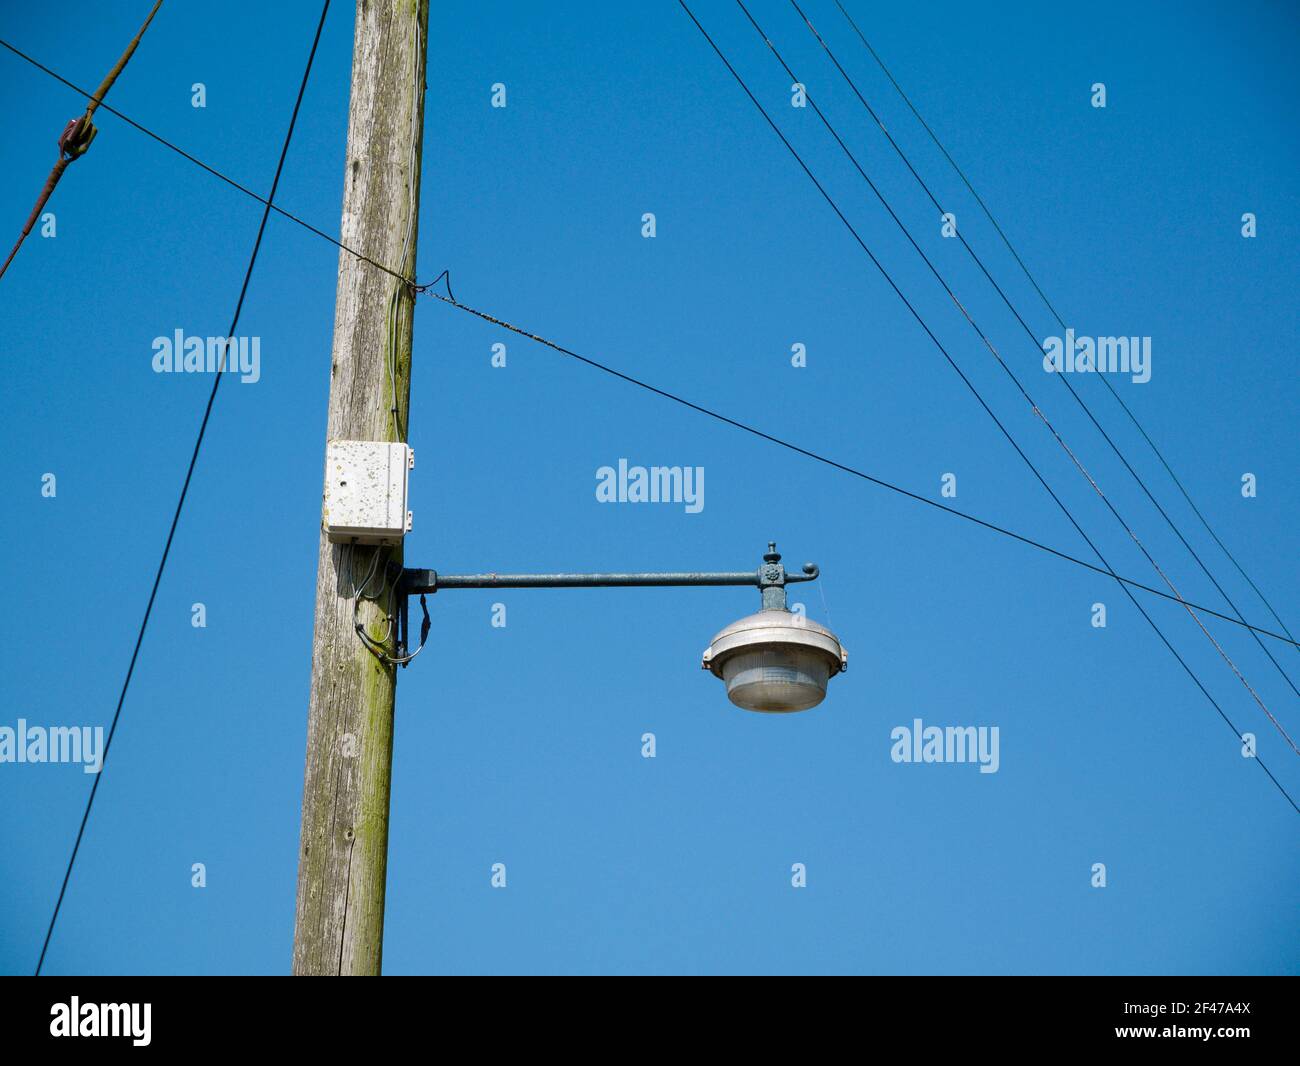 Un pilone di legno che supporta cavi elettrici da 230 volt, cavi telefonici e una lampada da strada in un villaggio nel sud-ovest dell'Inghilterra. Foto Stock